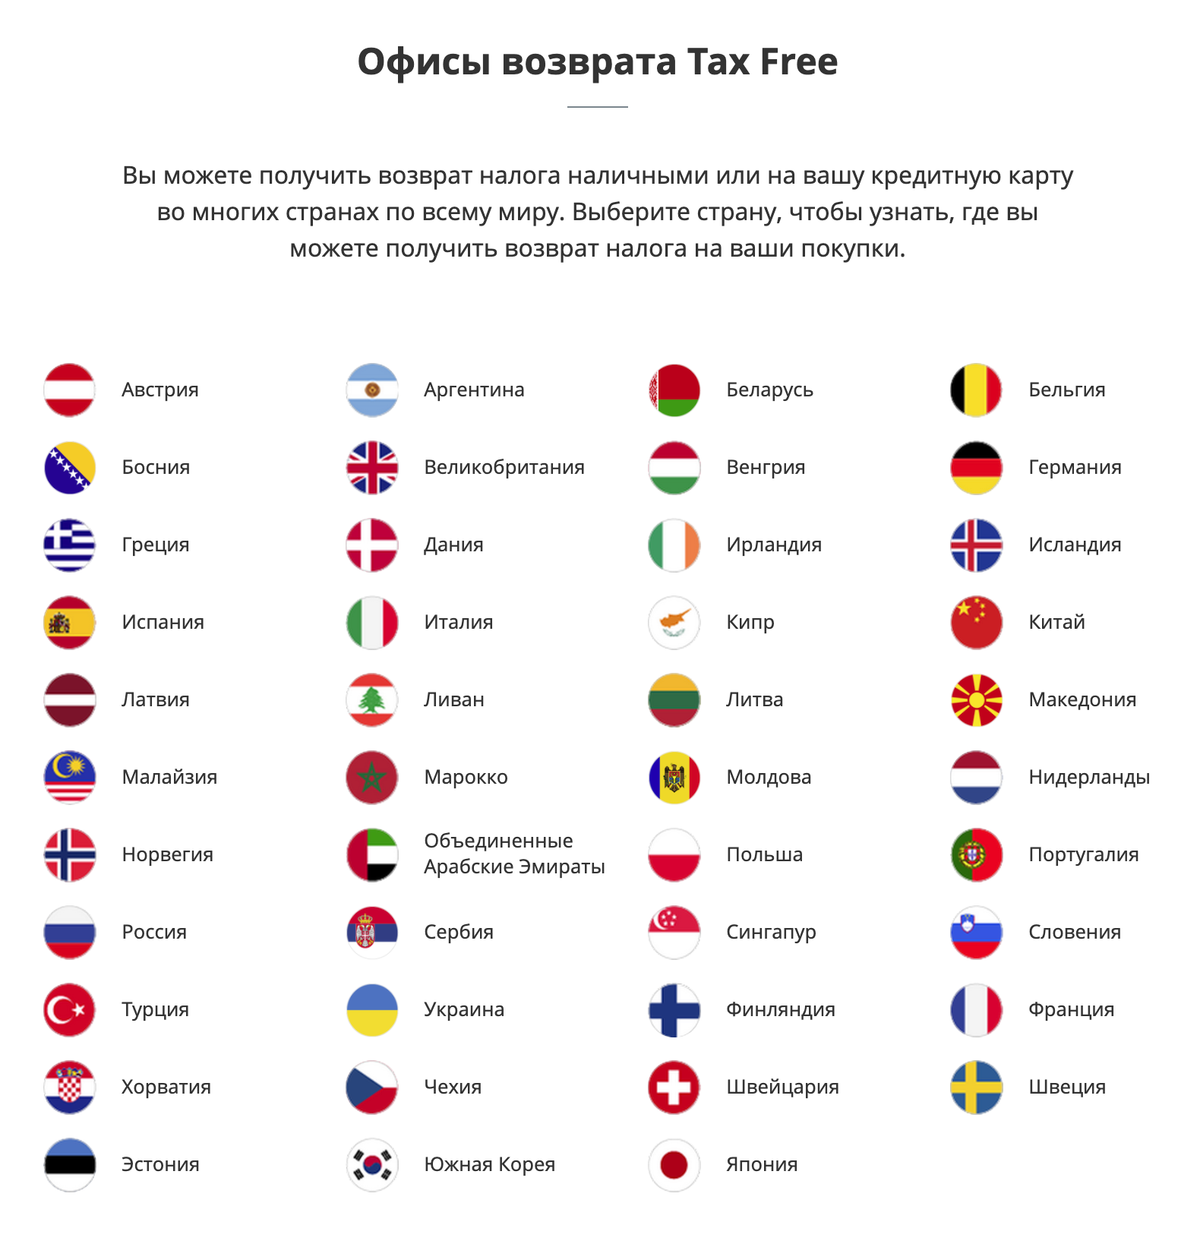 У «Глобал-блю» офисы возврата для&nbsp;каждой страны, где работает оператор, можно посмотреть на сайте. Источник: globalblue.ru